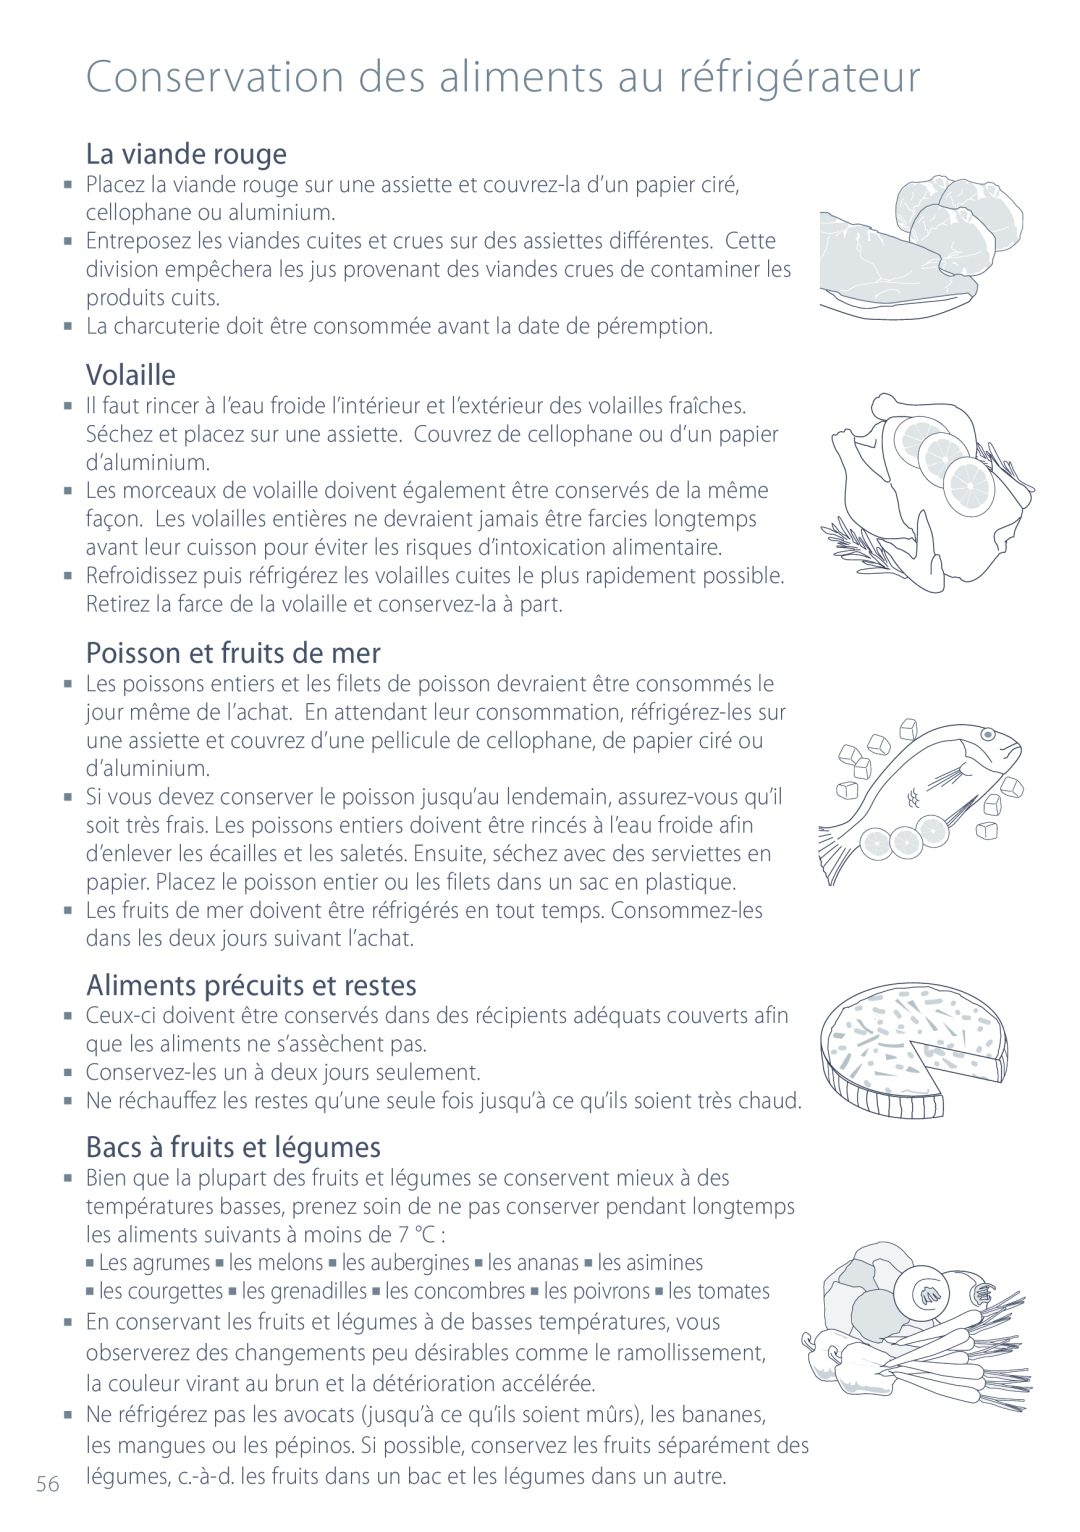 Fisher & Paykel ActiveSmart manual La viande rouge, Volaille, Poisson et fruits de mer, Aliments précuits et restes 